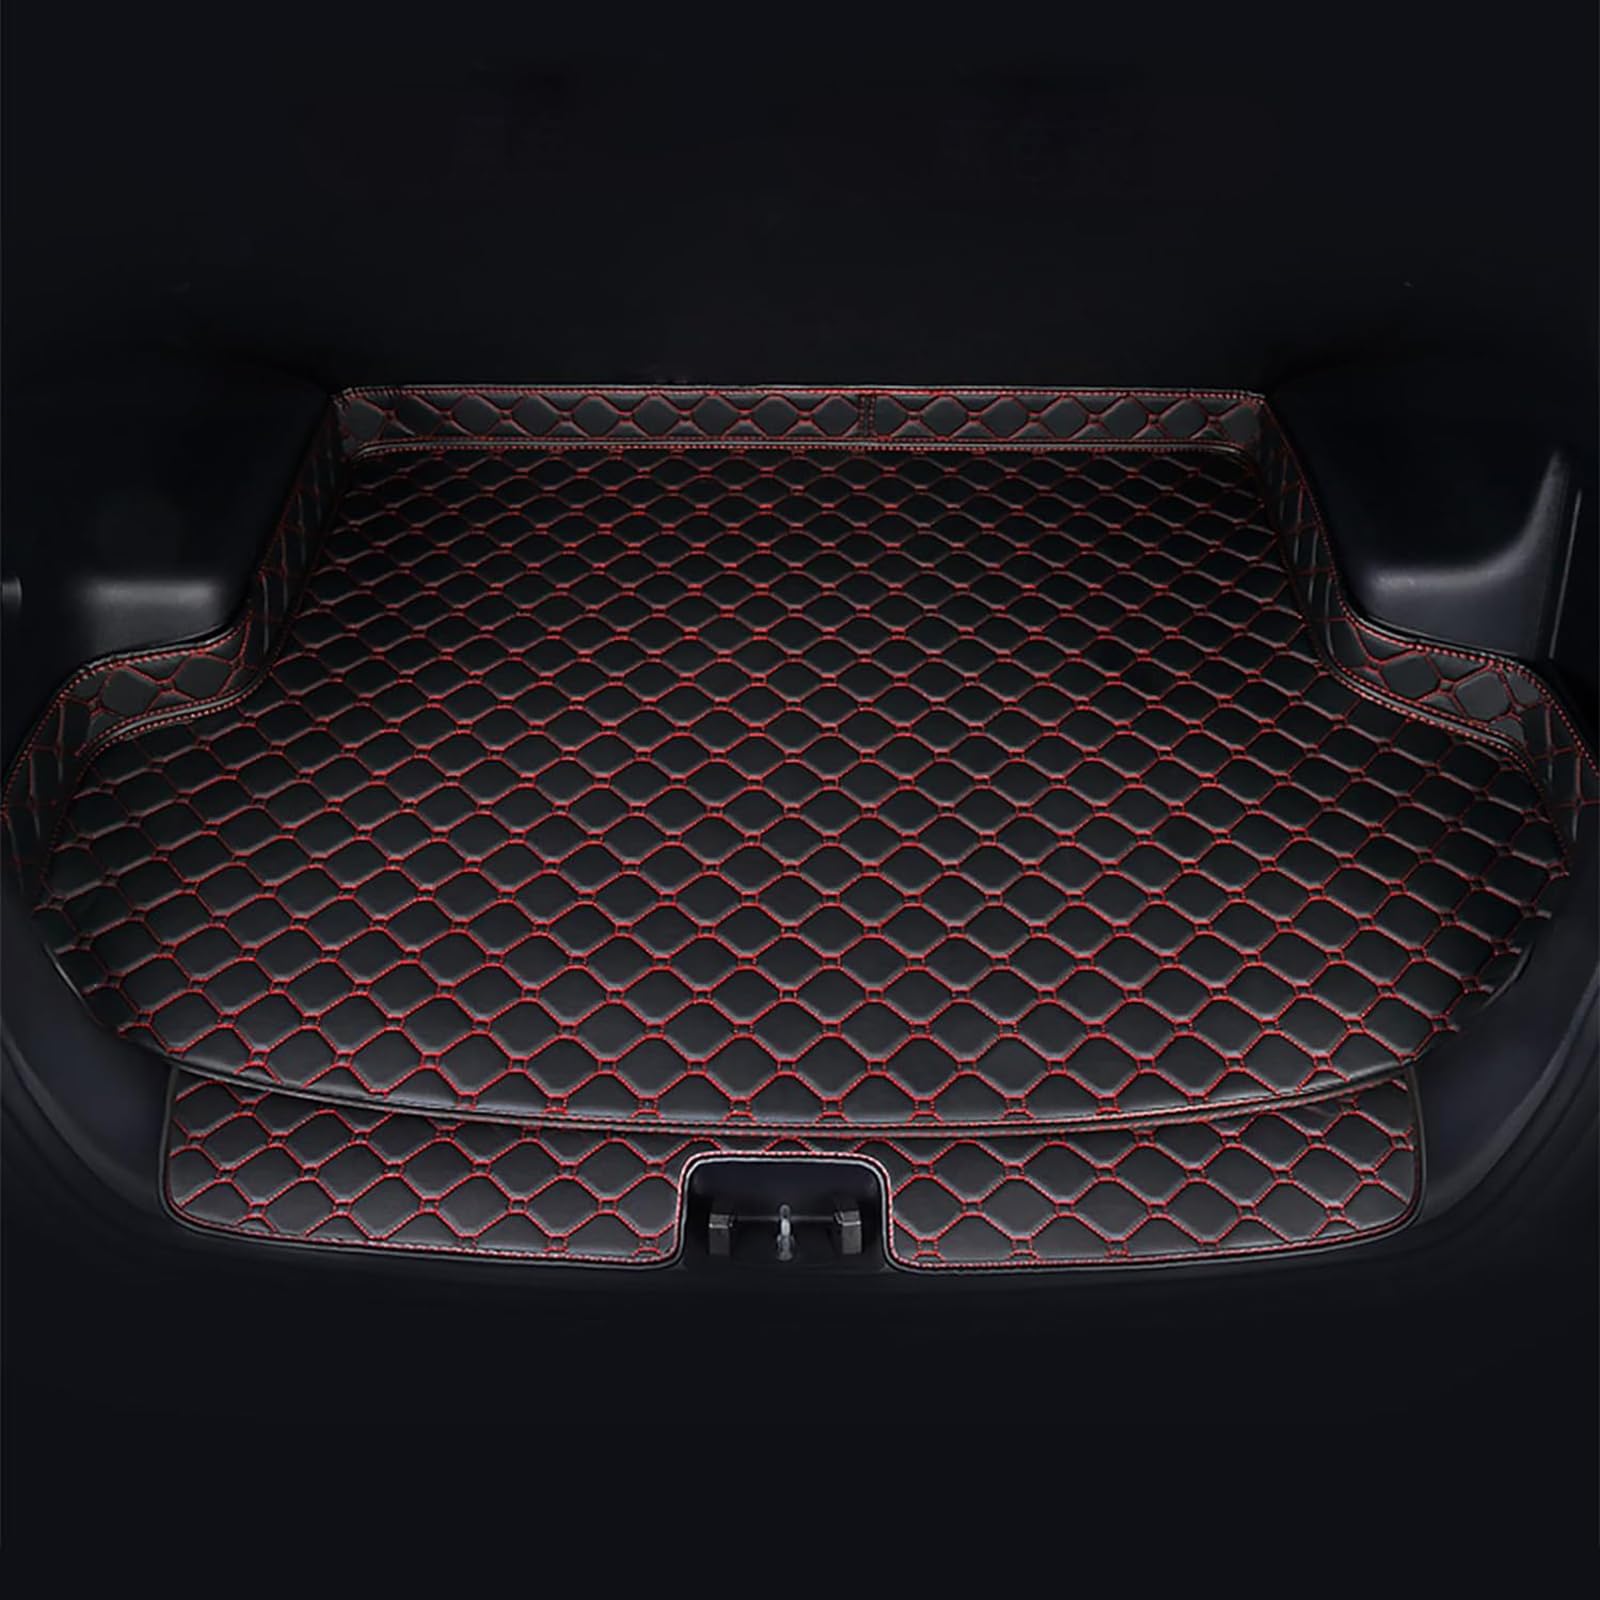 Auto Leder Kofferraummatten Für Hyundai New Santa Fe 7 Seater 2013-2018, Wasserdicht rutschfest Kofferraumwanne Allwetter Cargo Teppich Schutzmatte Interieur Zubehör,C/Black-Red von FNUQKREF